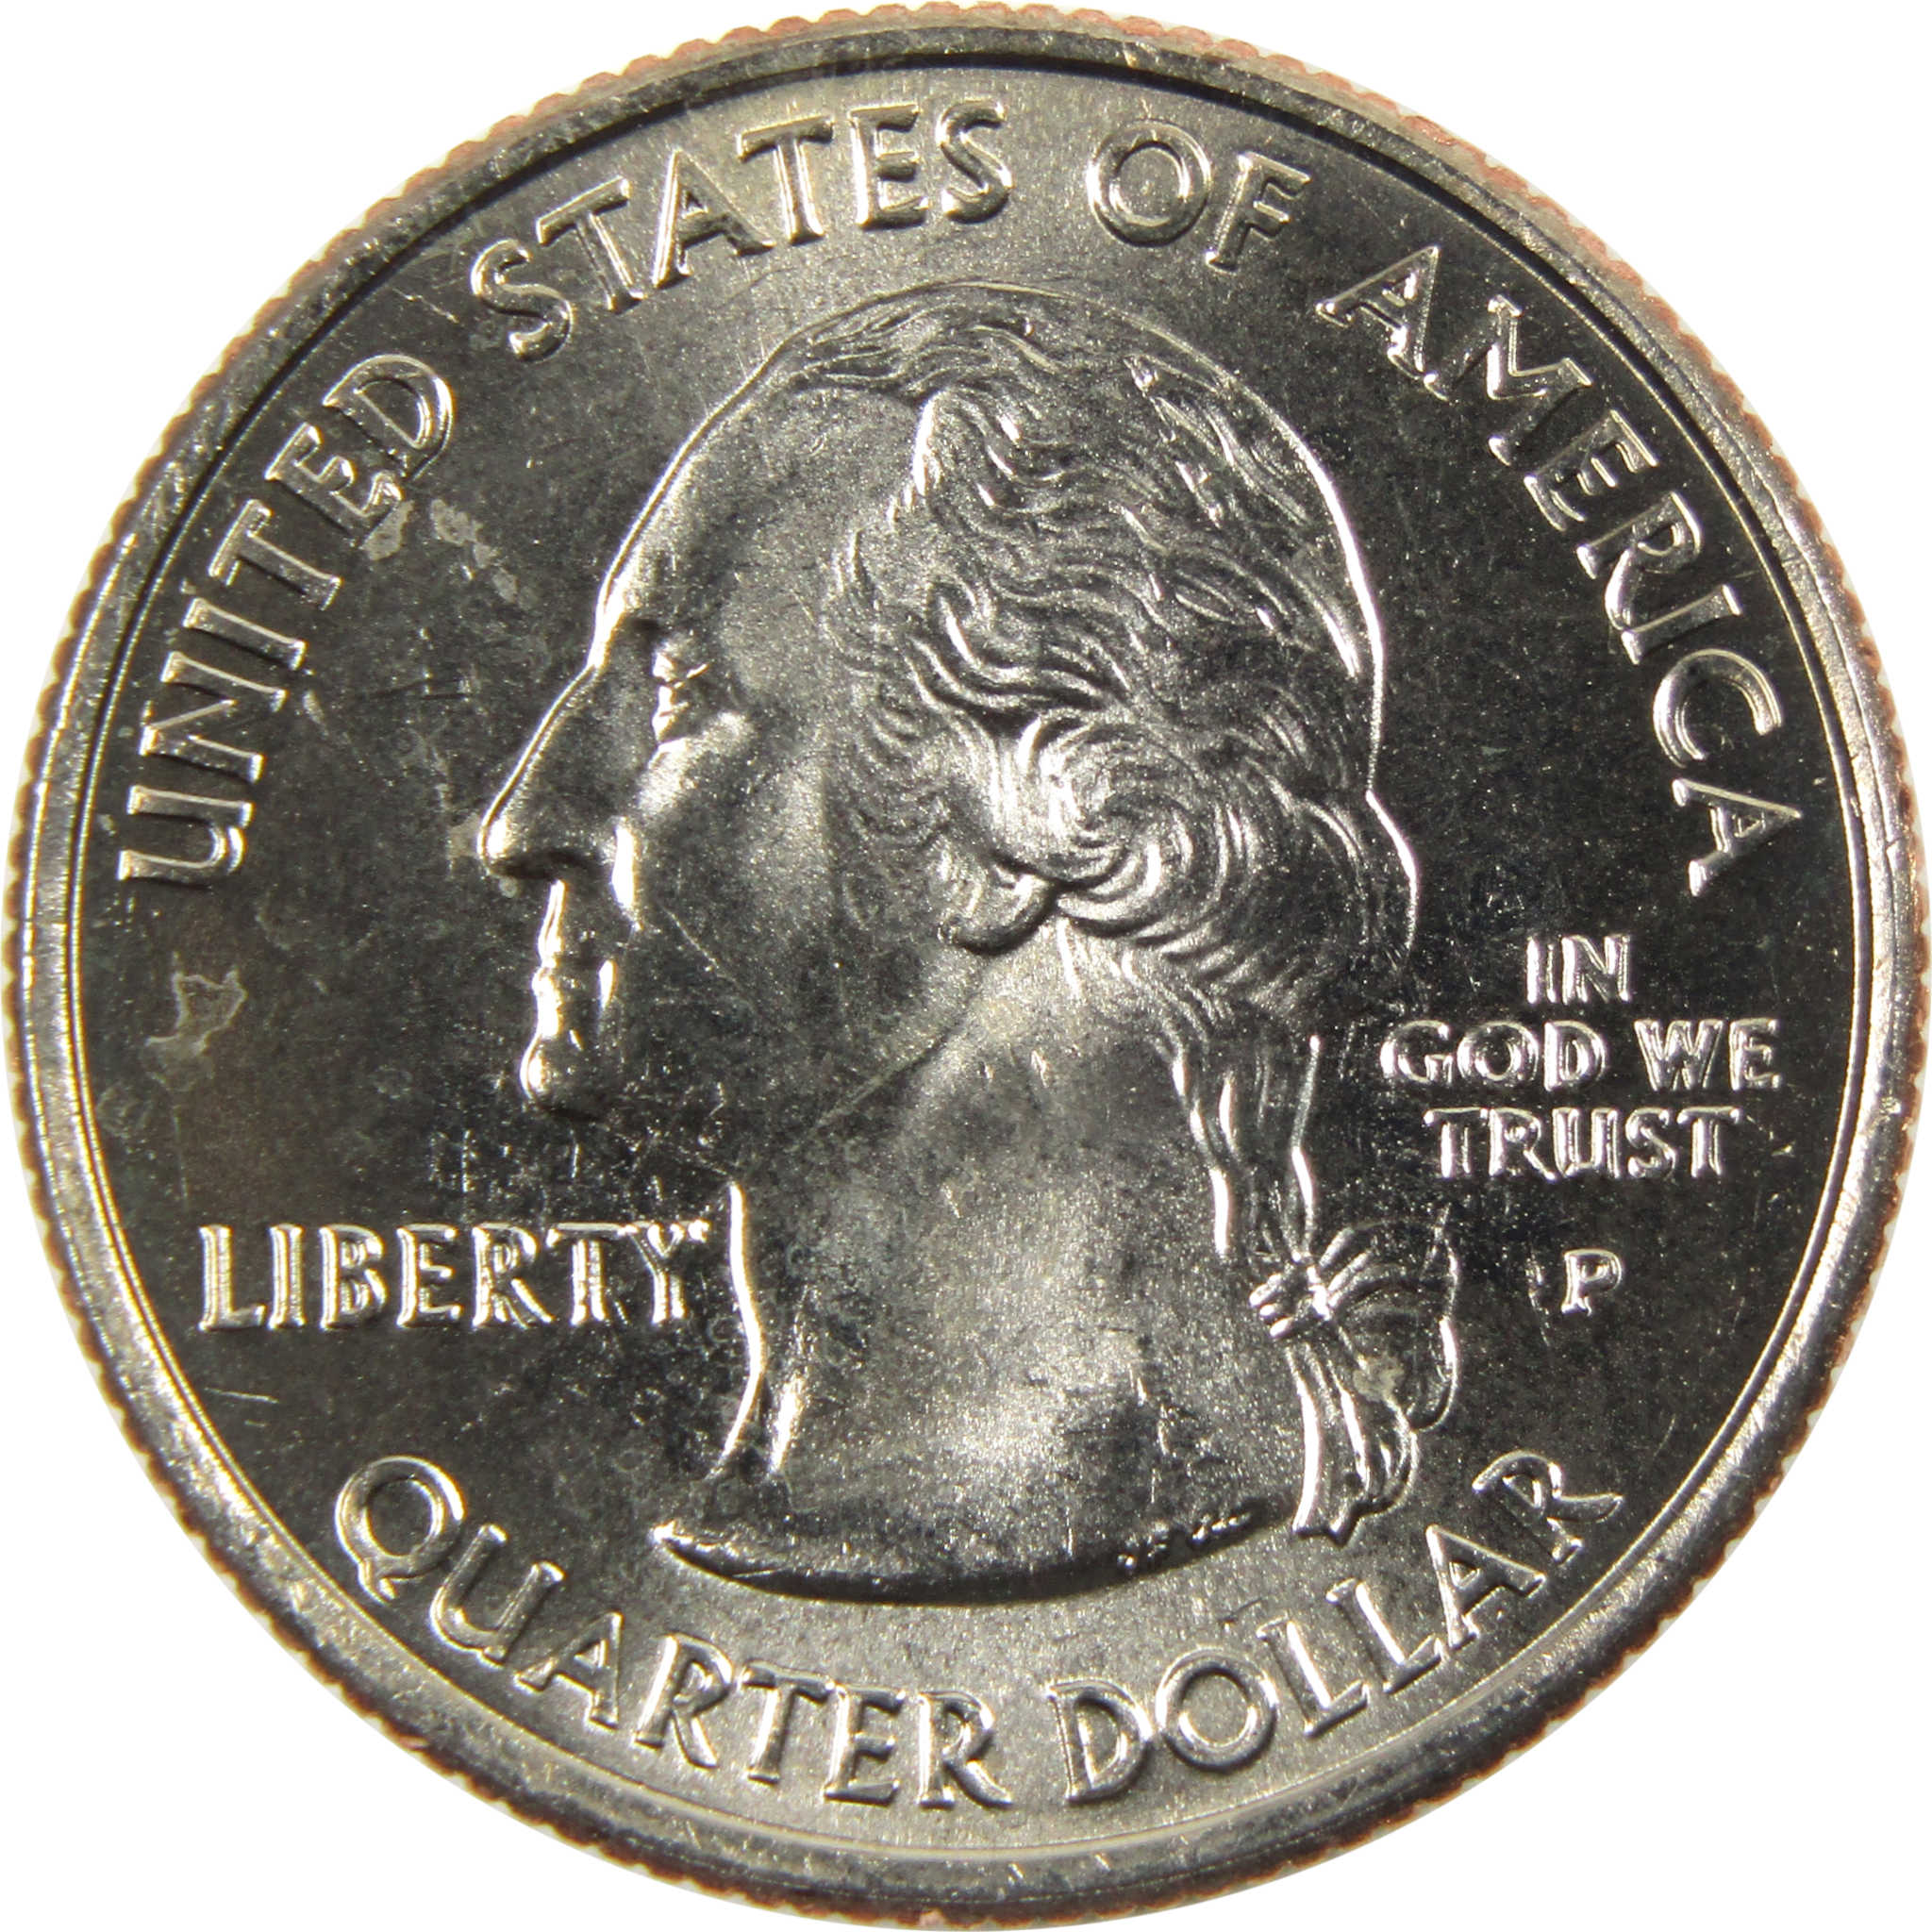 2006 P South Dakota State Quarter BU Uncirculated Clad 25c Coin